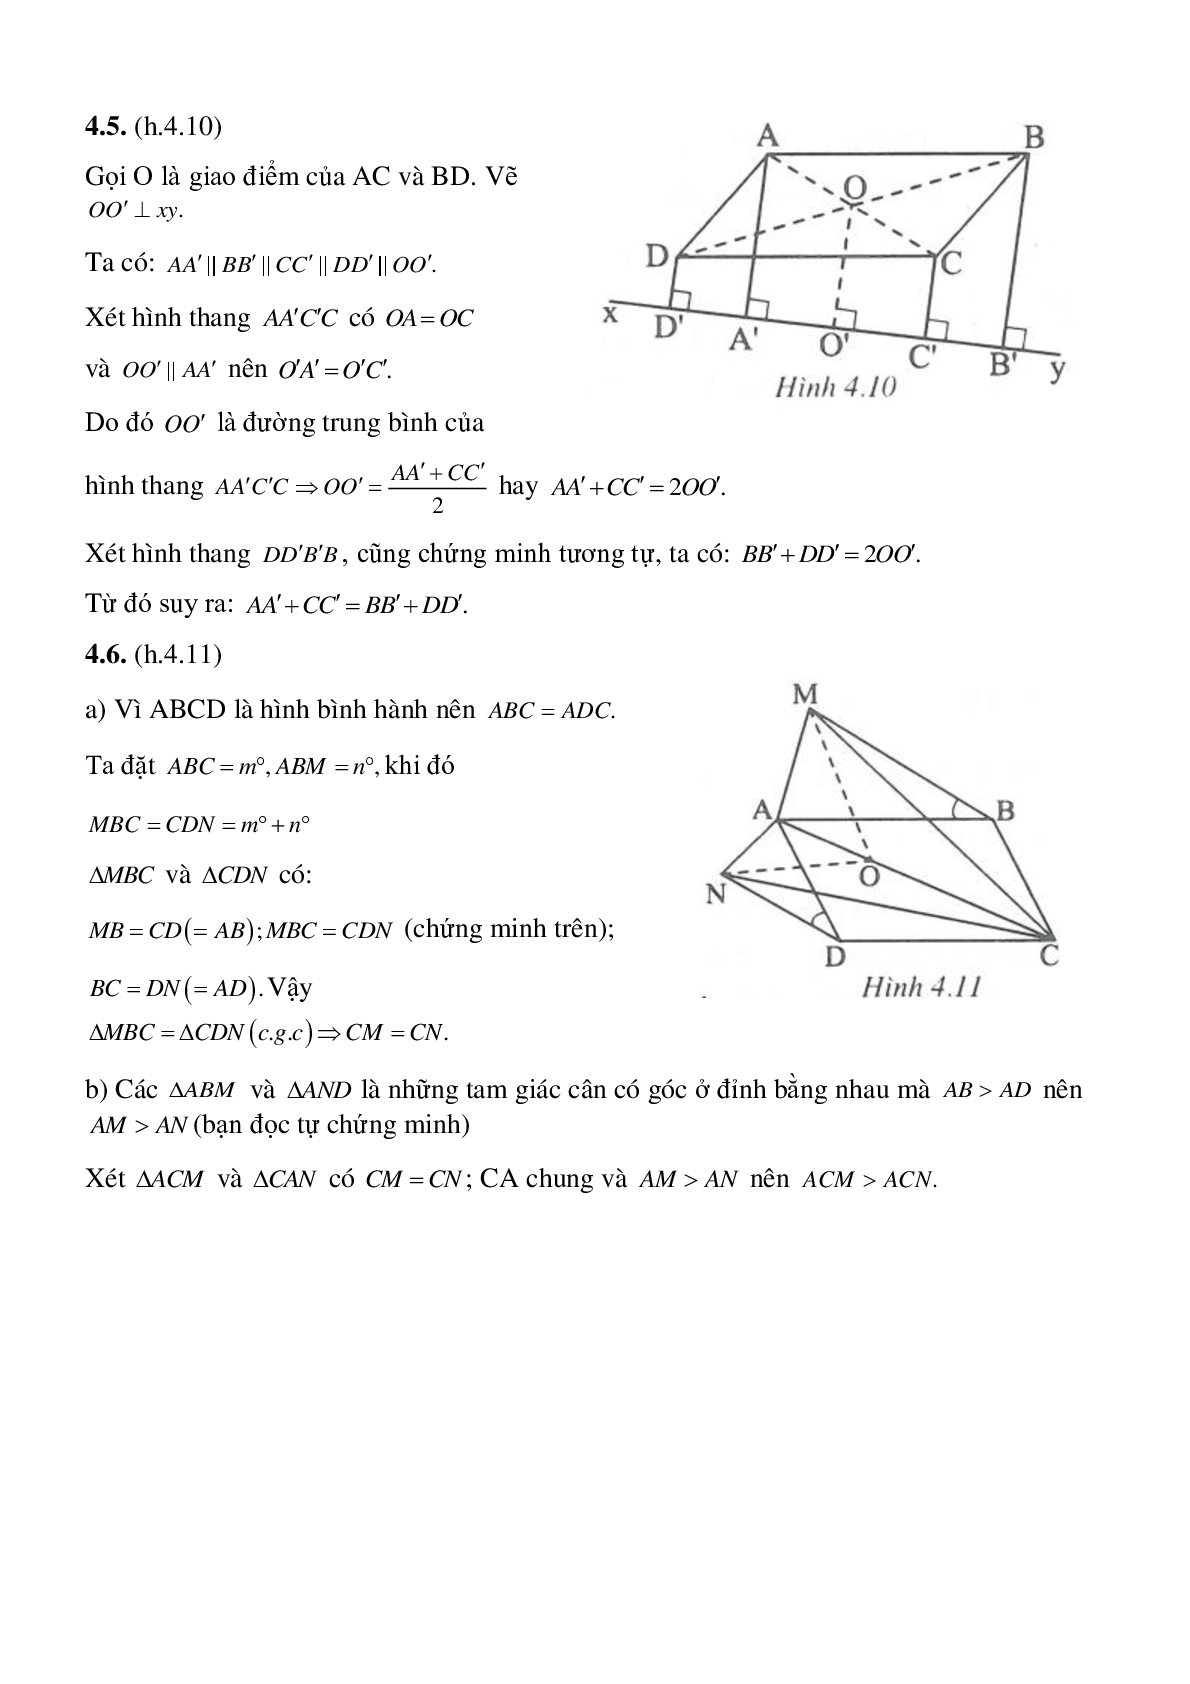 Hình bình hành - Hình học toán 8 (trang 7)